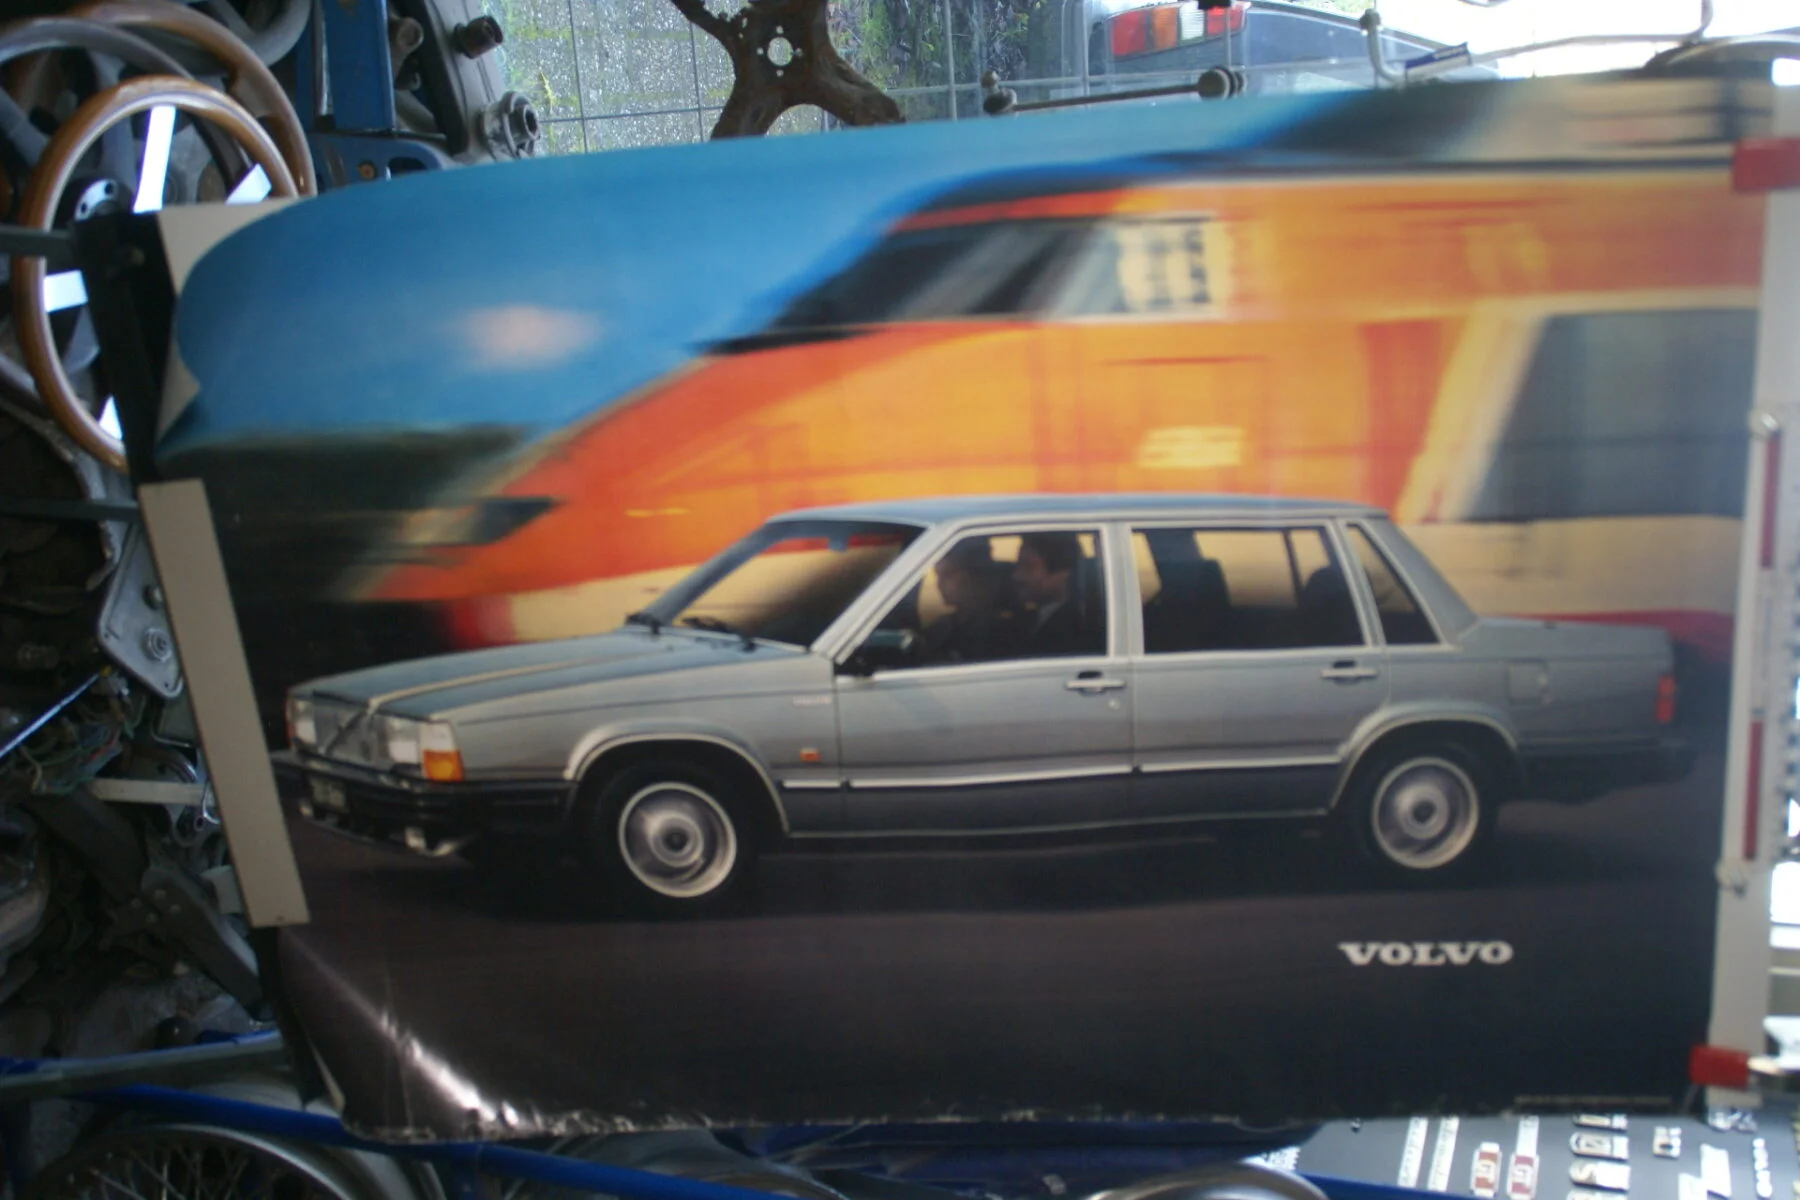 DSC02387 1982 Volvo 764 poster MSPV 487